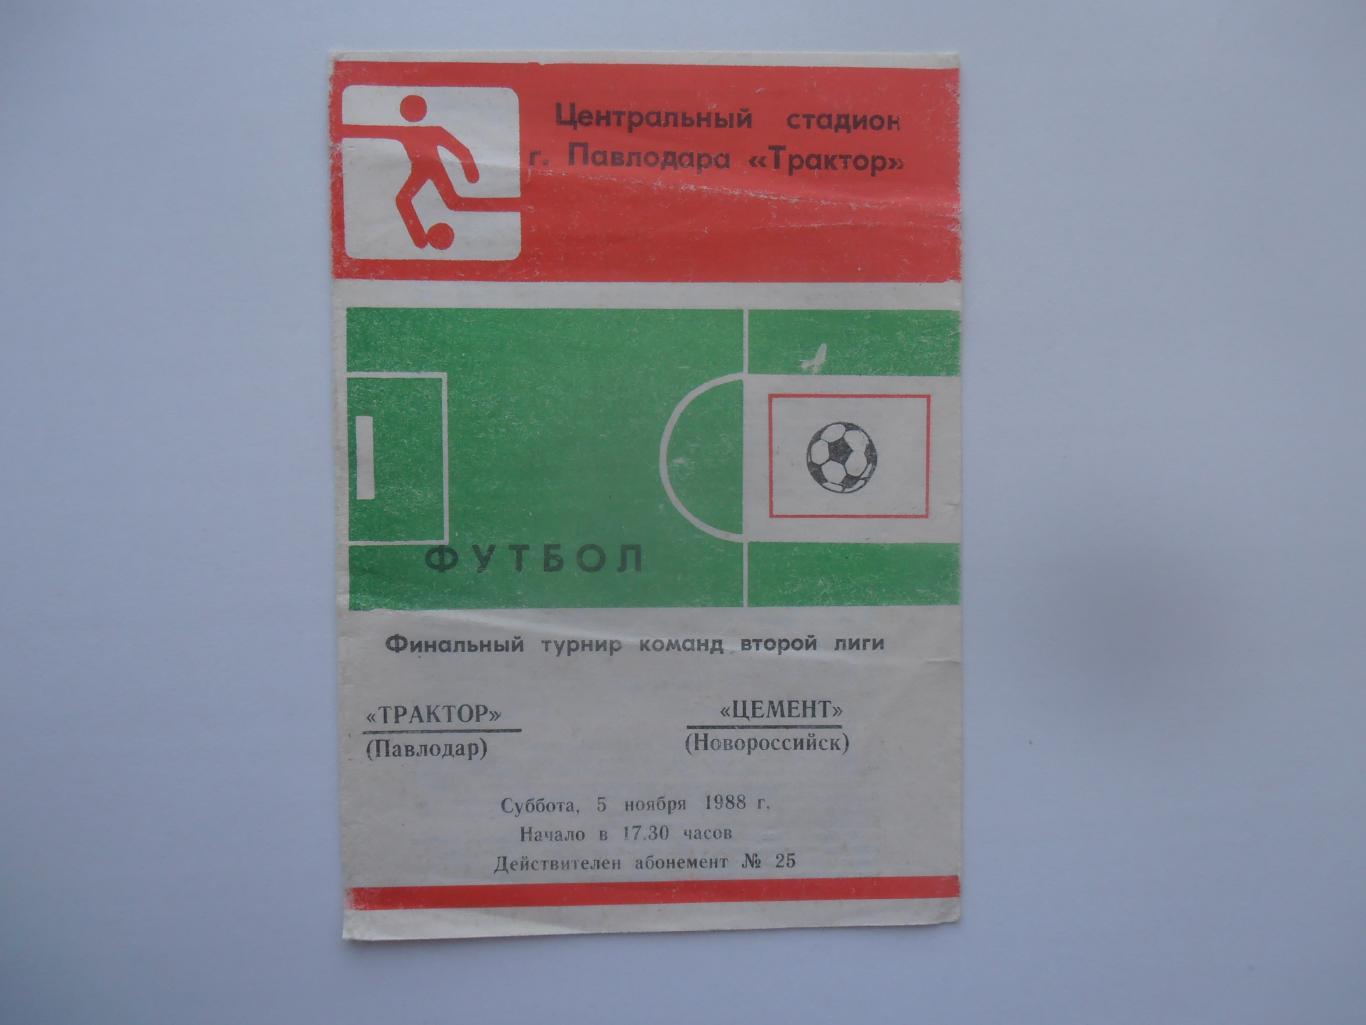 Трактор Павлодар-Цемент Новороссийск 5 ноября 1988 финальный турнир